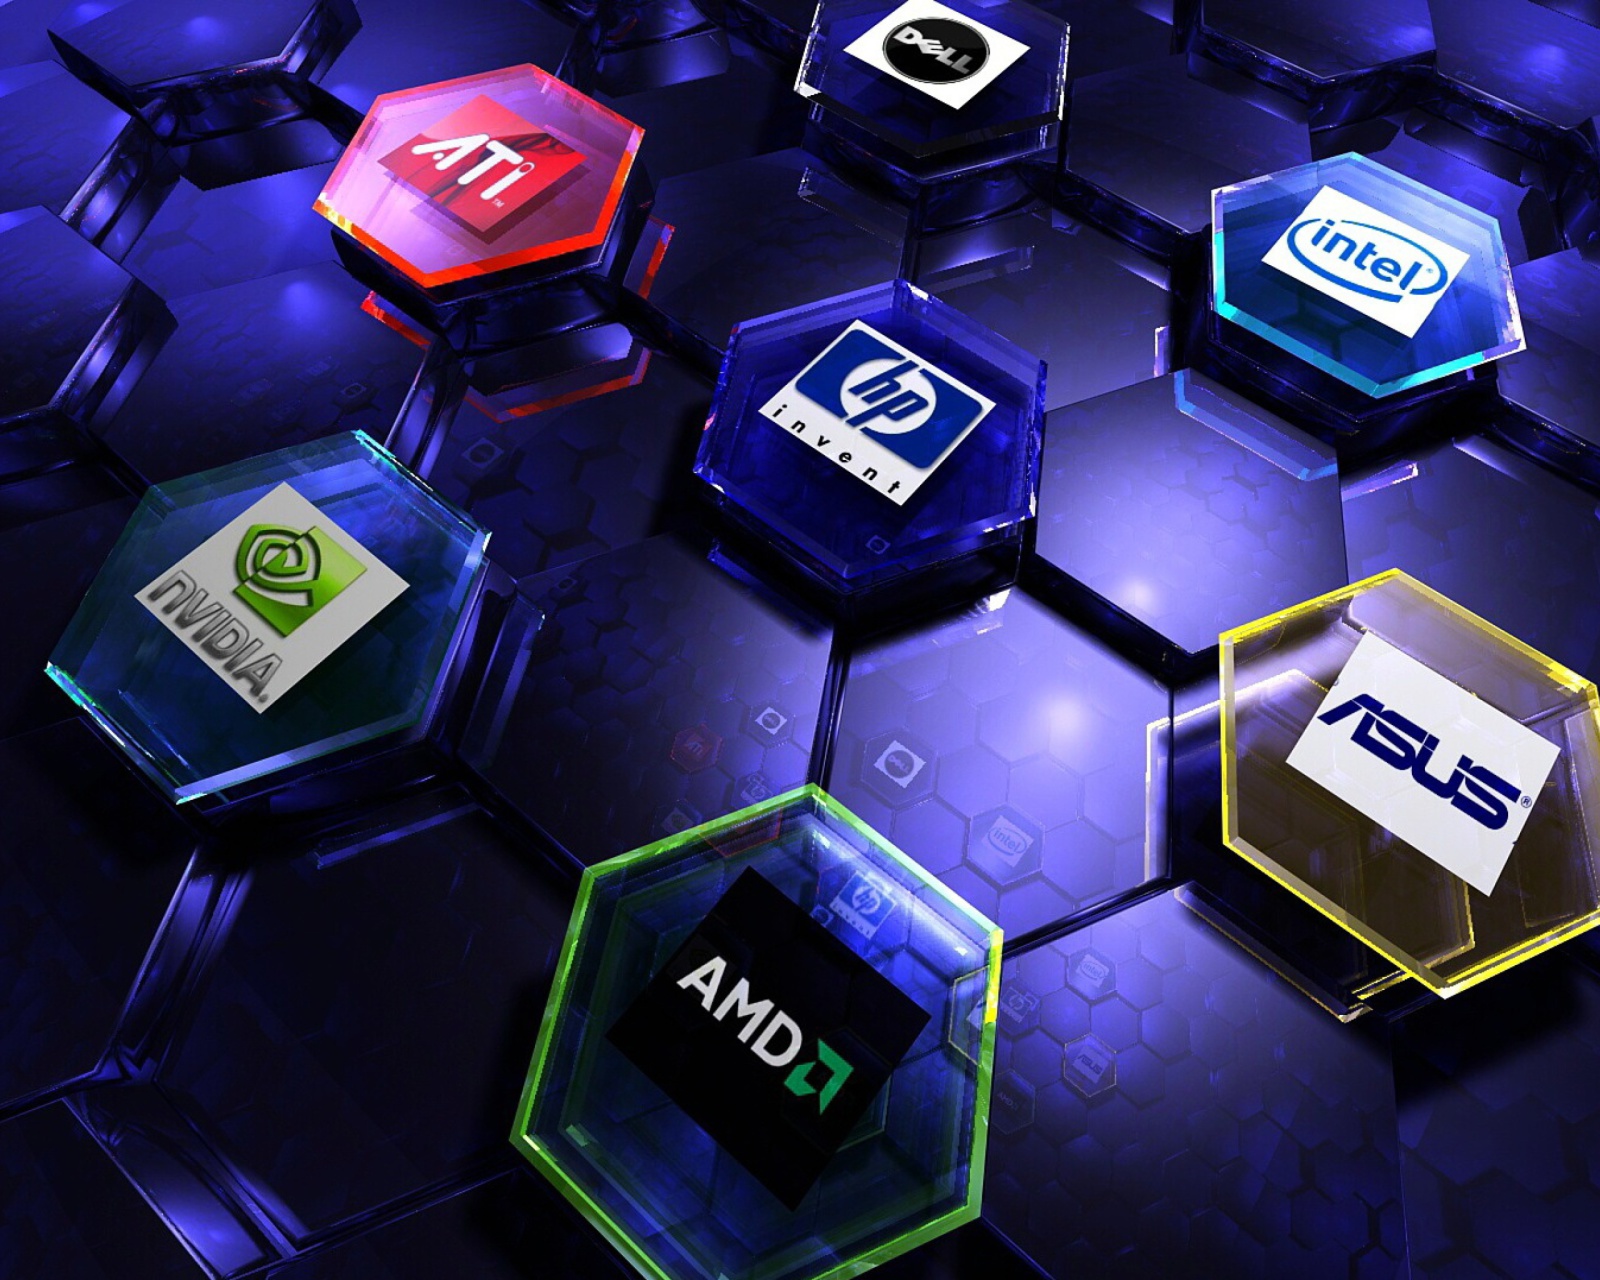 Sfondi Hi-Tech Logos: AMD, HP, Ati, Nvidia, Asus 1600x1280